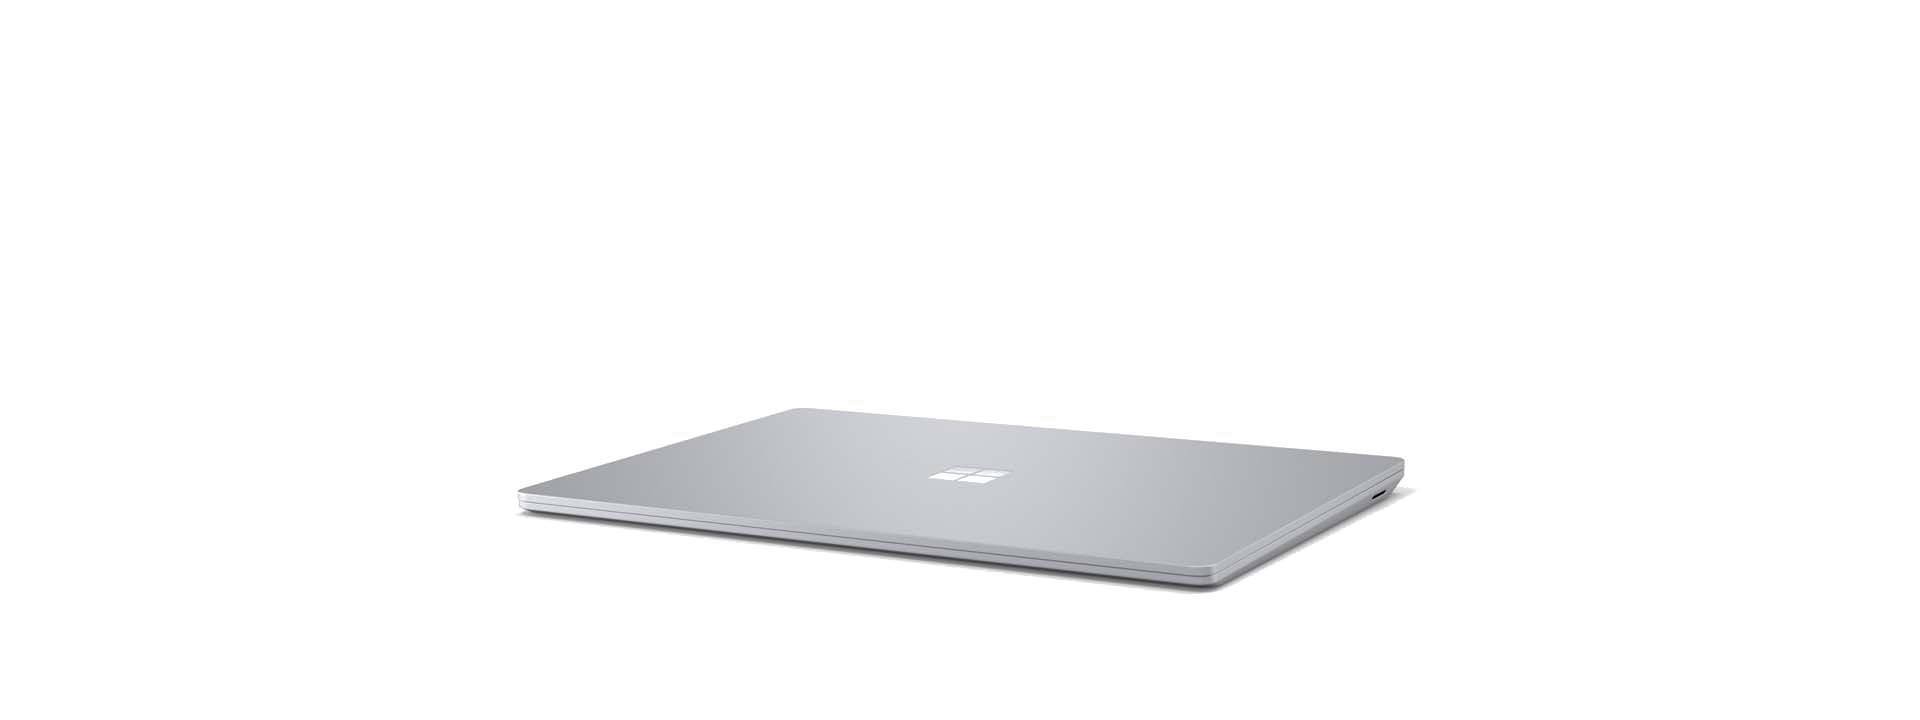 Surface Laptop 3 en angle avec l’écran fermé